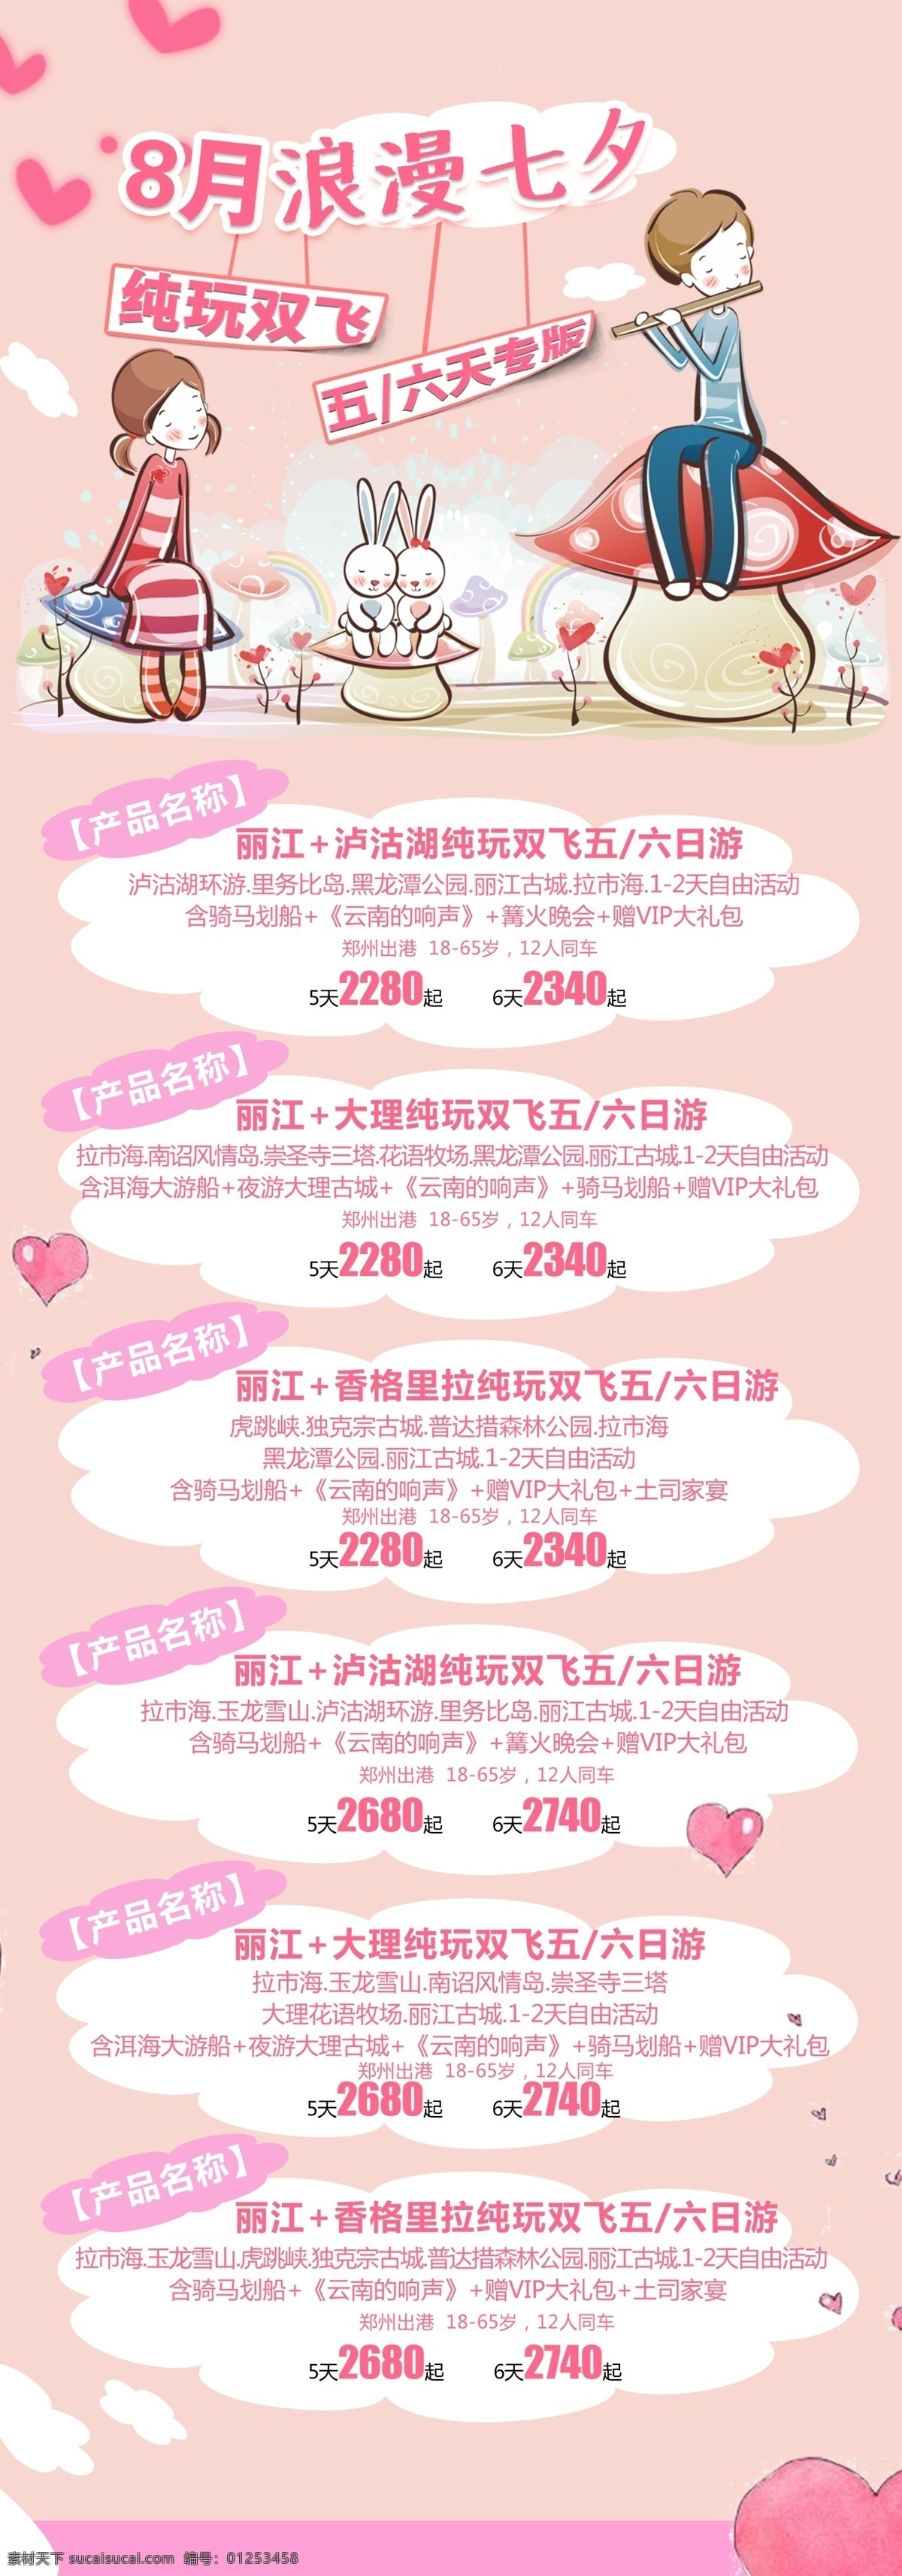 月 七夕 h5 旅游 微 信 海报 粉色 图 情人节图 banner 卡通图 背景图 心形元素